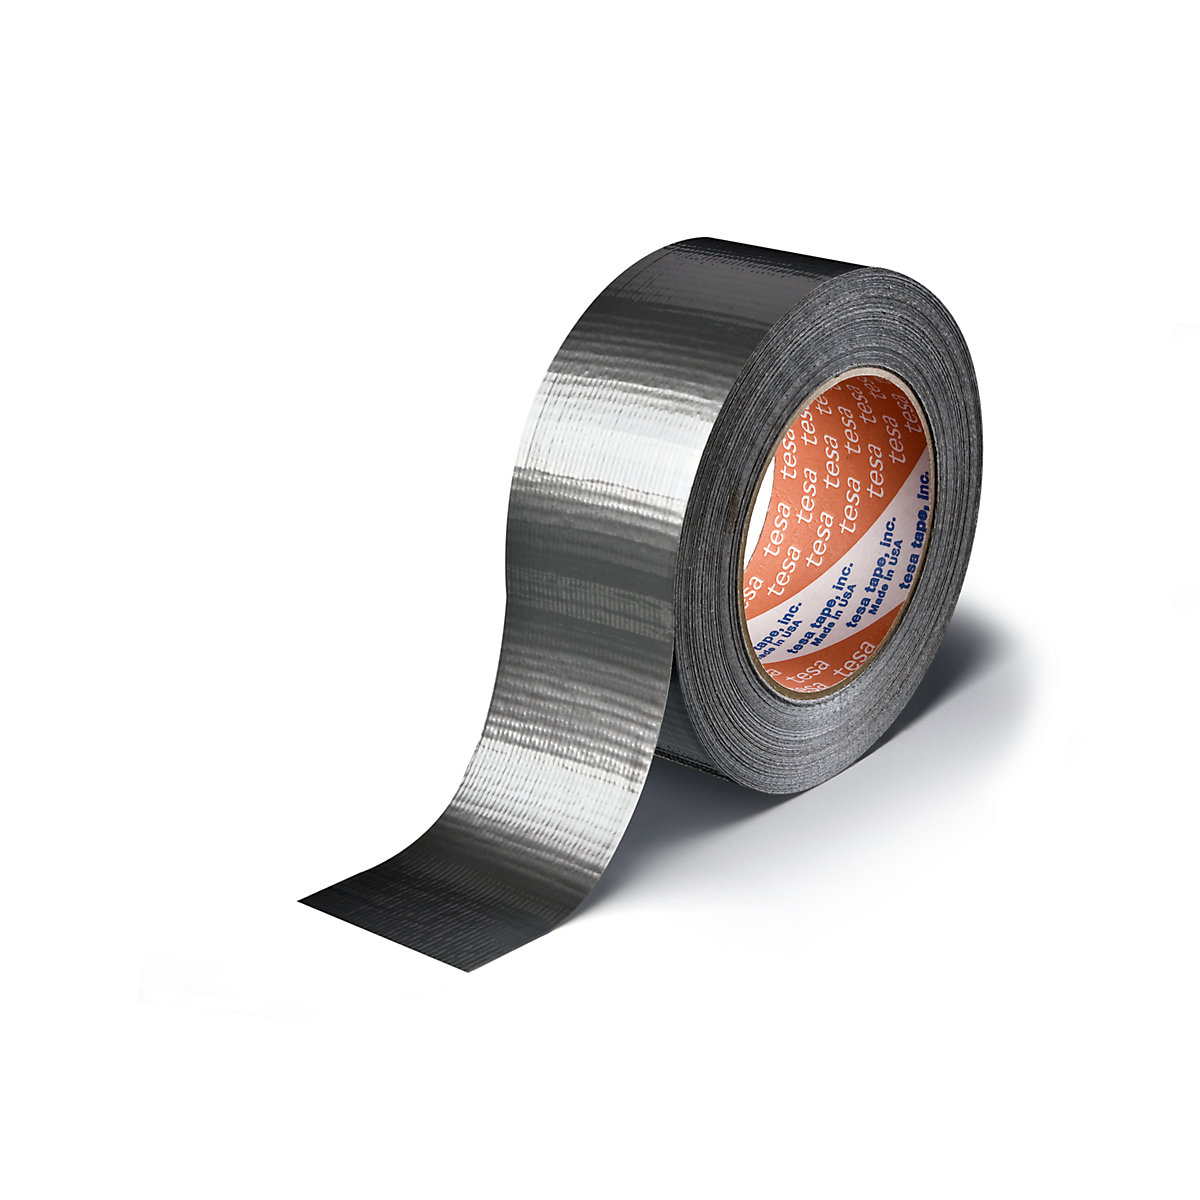 Tkaninová páska – tesa, tkaninová páska tesa® 4662, bal.j. 24 rolí, stříbrná, šířka pásky 48 mm-3